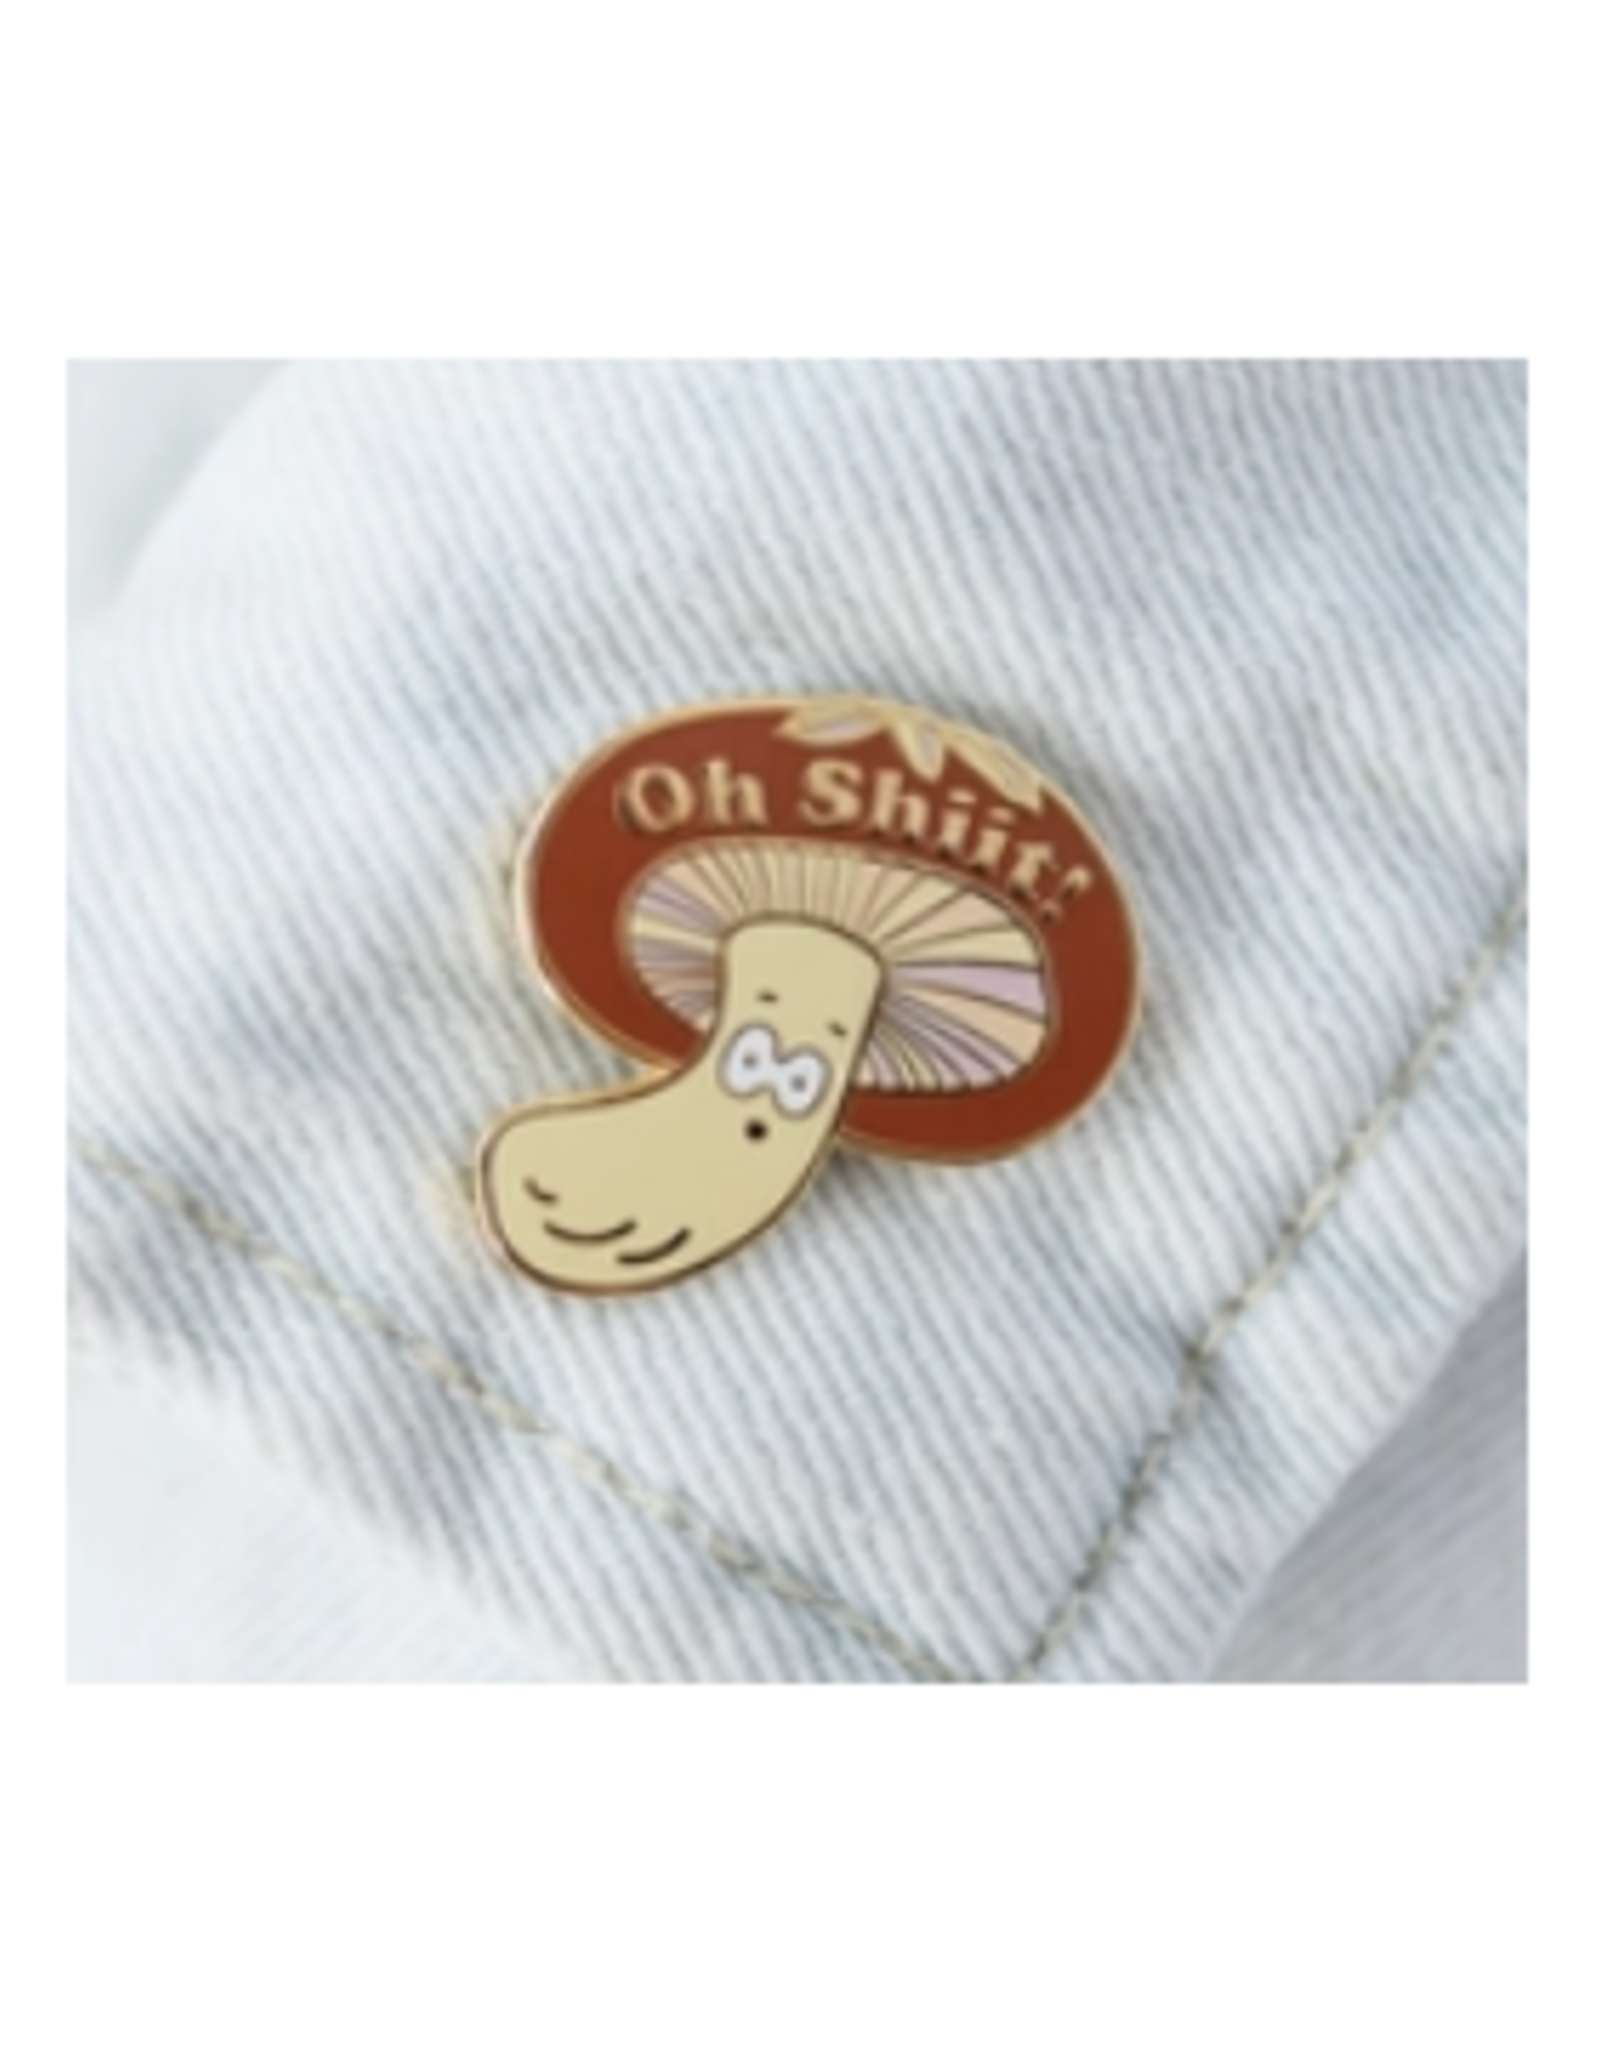 Oh Shii-take Mushroom Enamel Pin